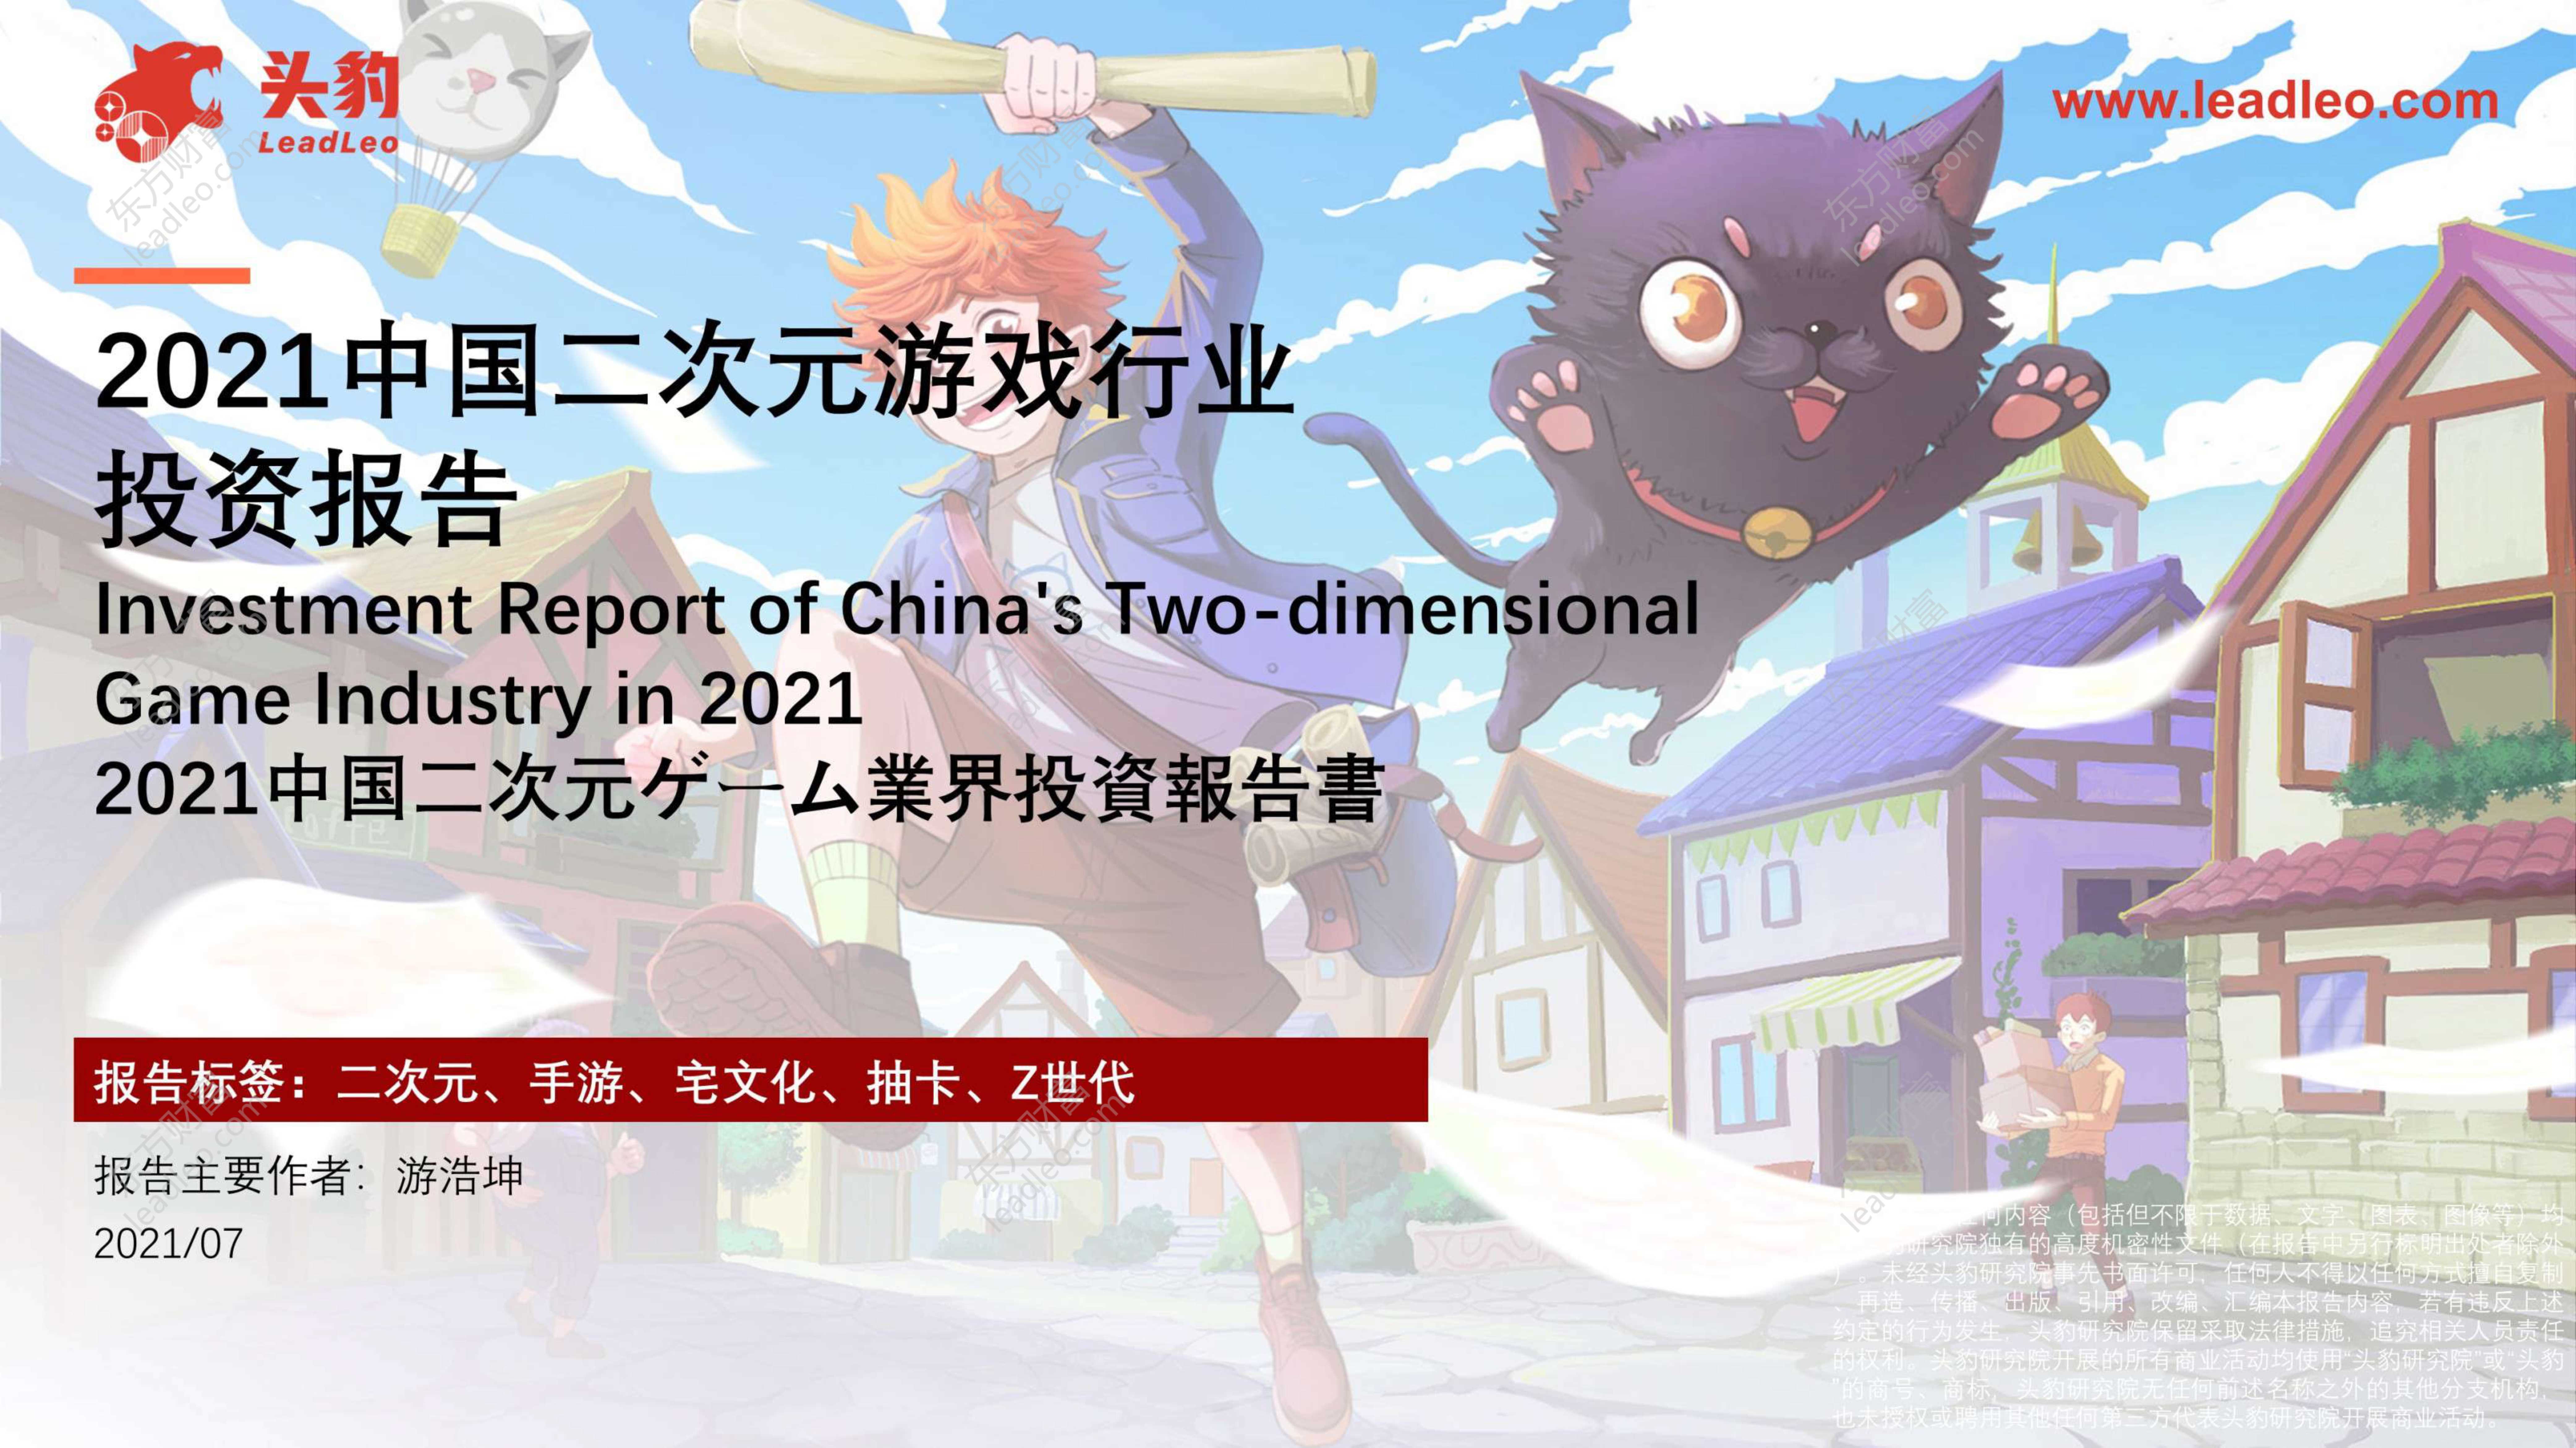 头豹研究院-2021中国二次元游戏行业投资报告-2021.08-41页